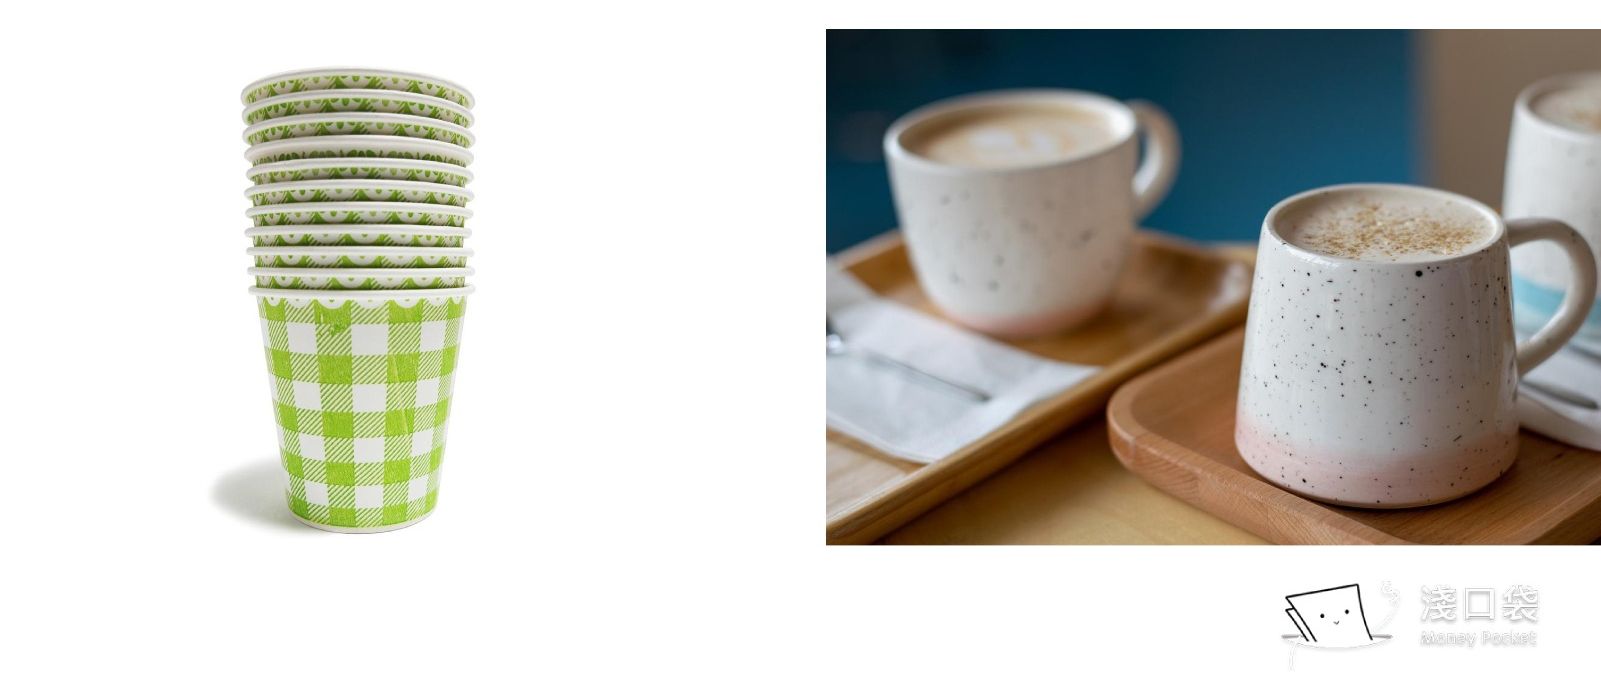 左邊是紙杯，右邊是陶瓷杯，哪一種杯子喝更有感覺呢